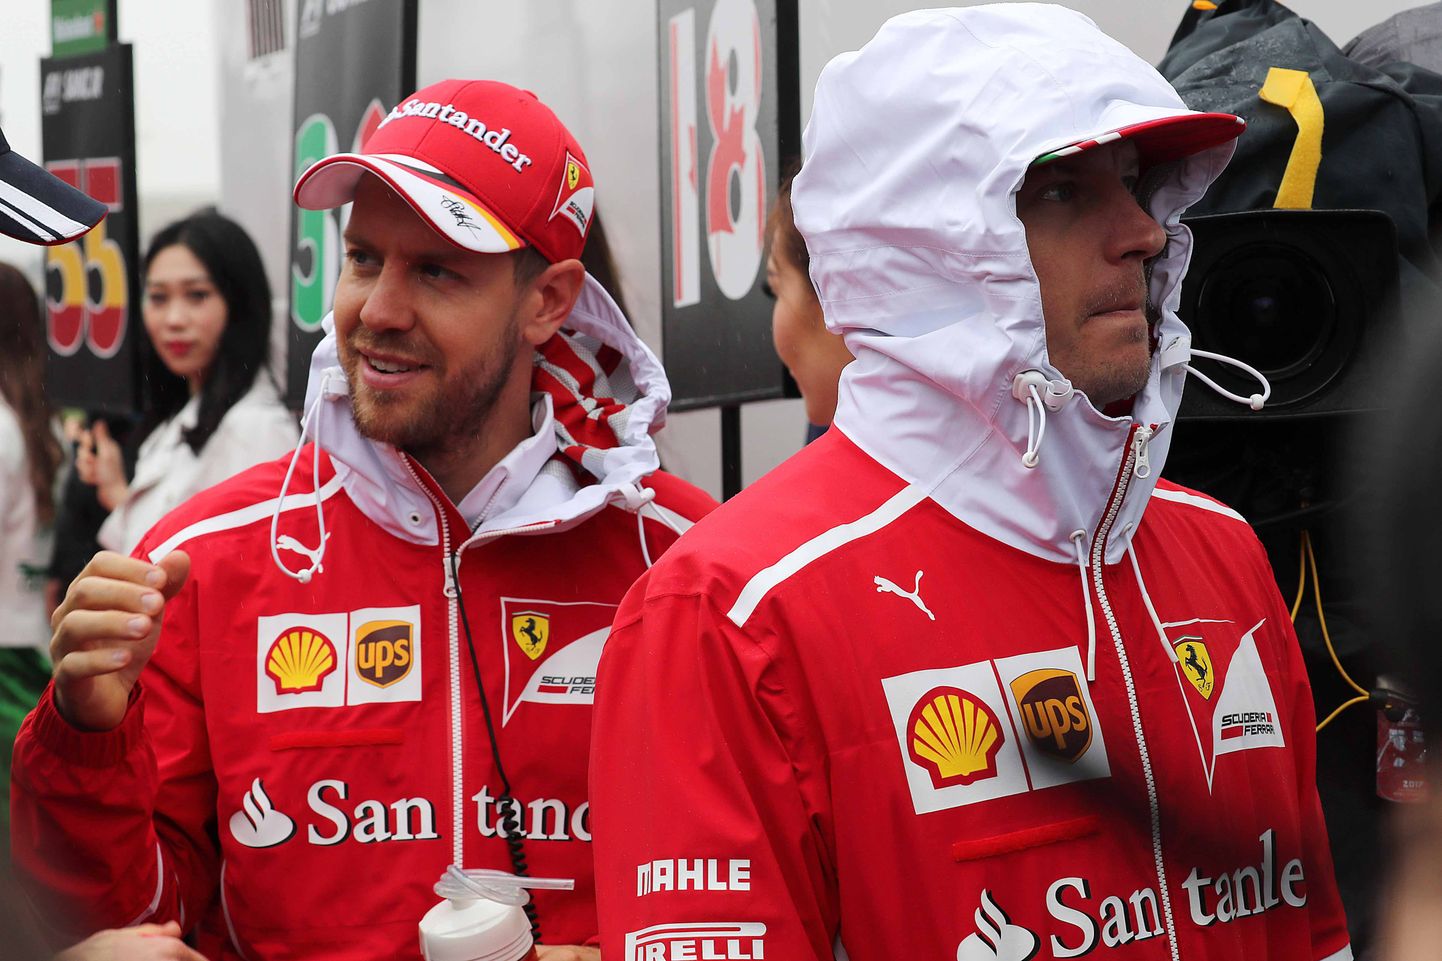 Sebastian Vettel naeratab, Kimi Räikköneni kulm on kortsus. Kas nii läheb hooaja lõpuni?